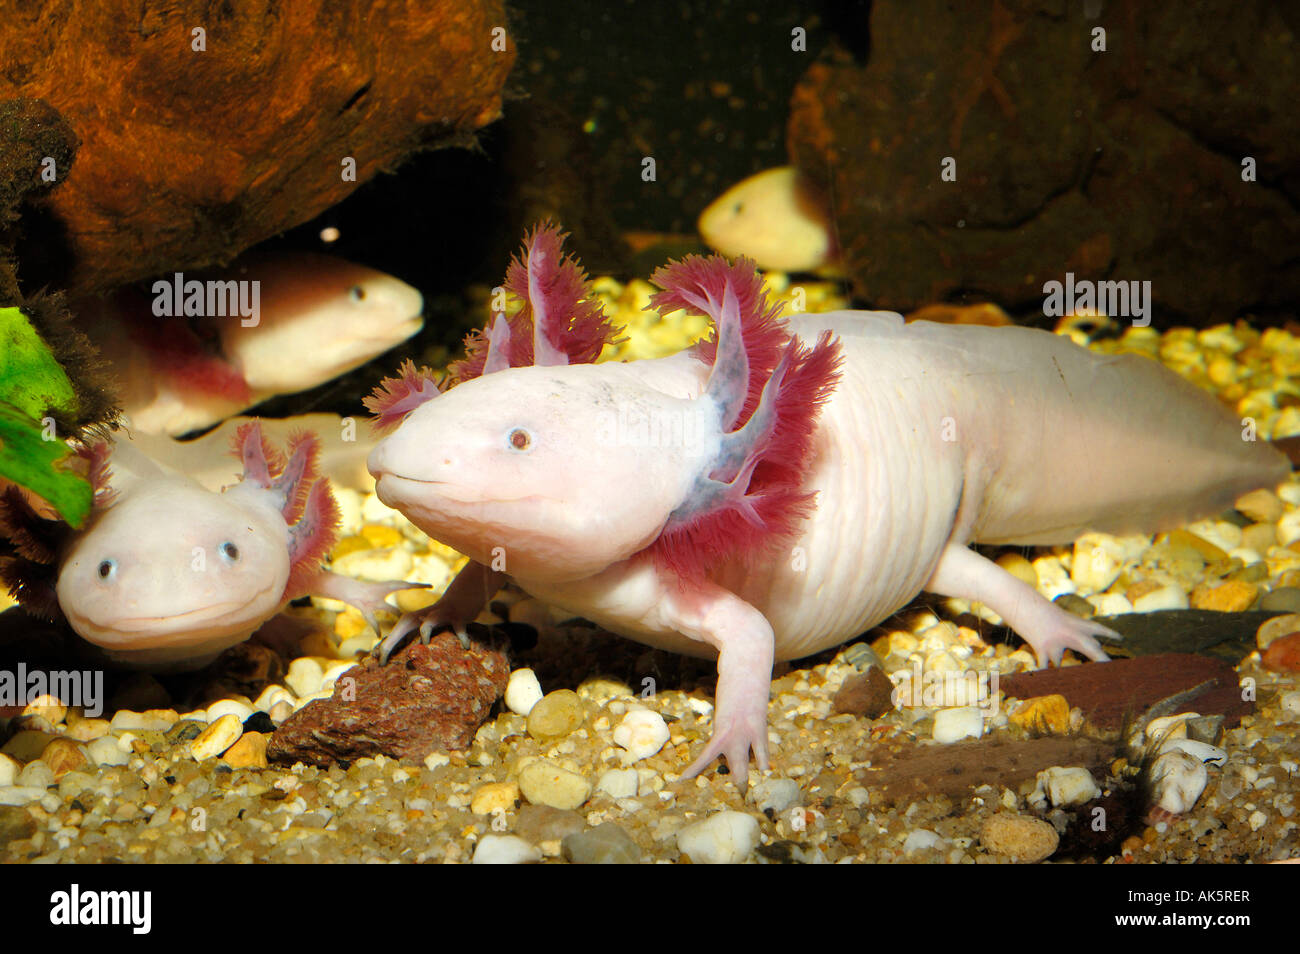 Mexican Salamander Stock Photo